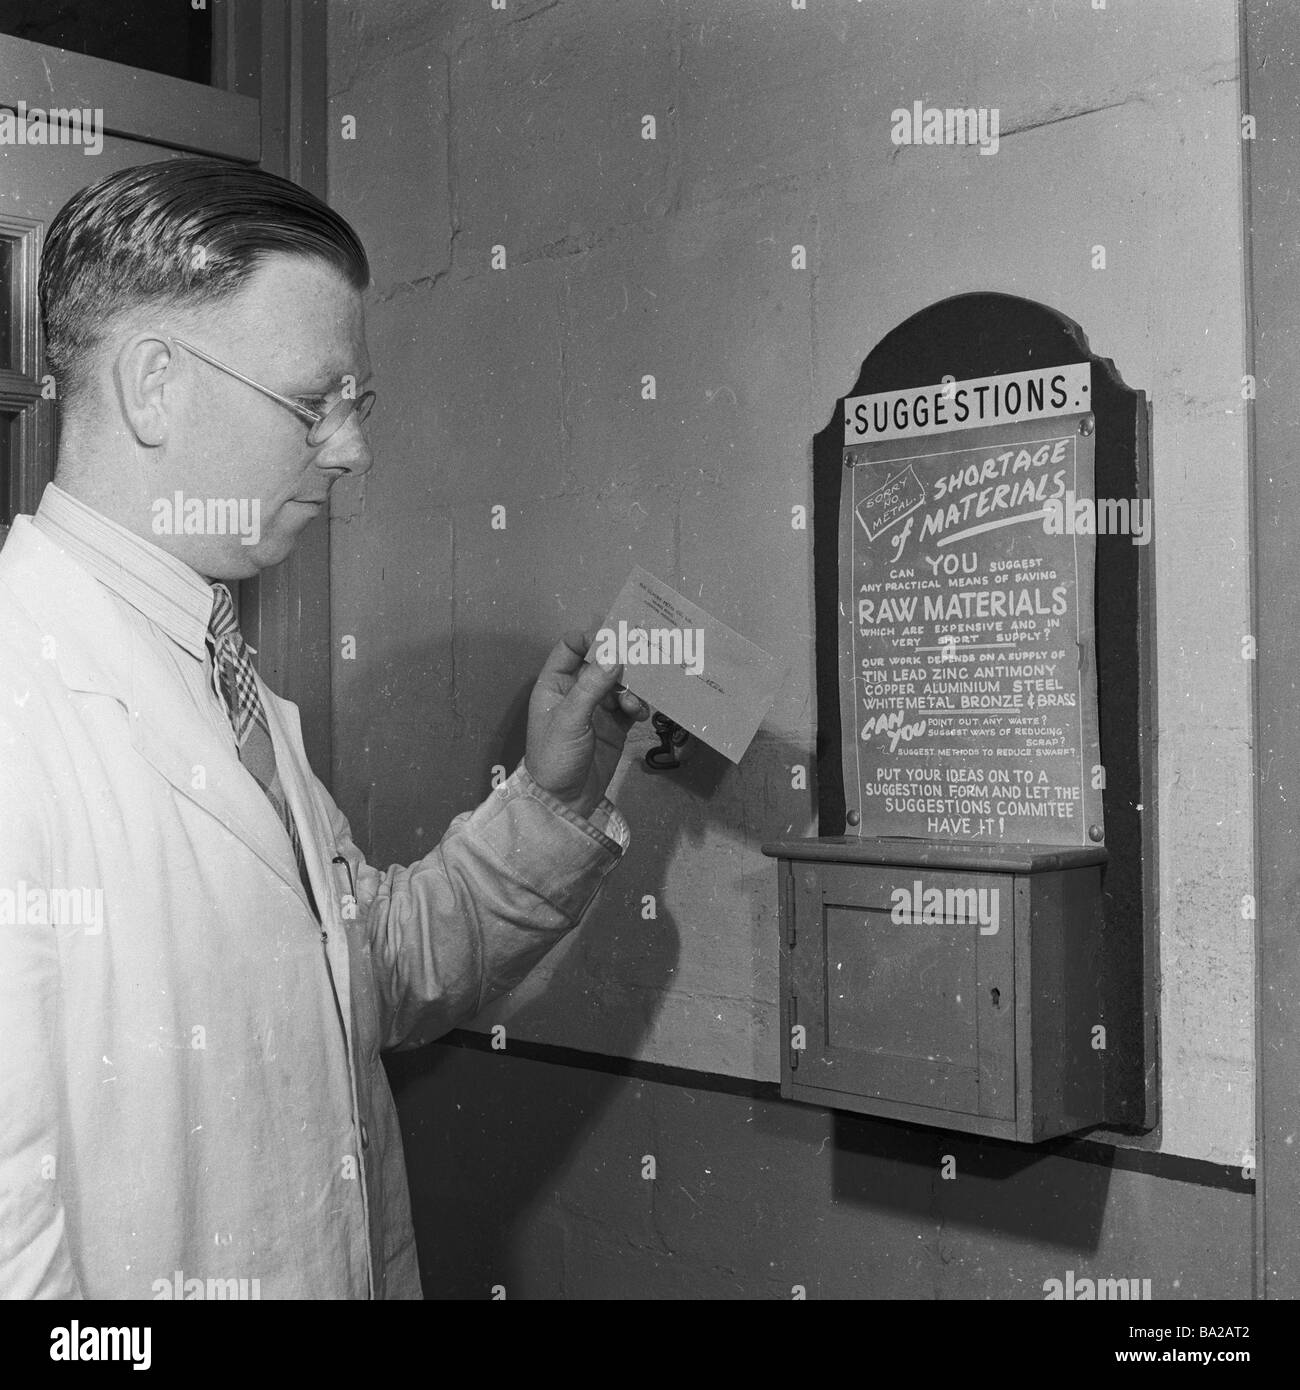 1950s, ein historischer, männlicher Angestellter, der einen weißen Mantel über einem Hemd und einer Krawatte trägt, legt eine Karte in die an der Wand montierte Vorschlagsbox der Fabrik, England, Großbritannien. Stockfoto